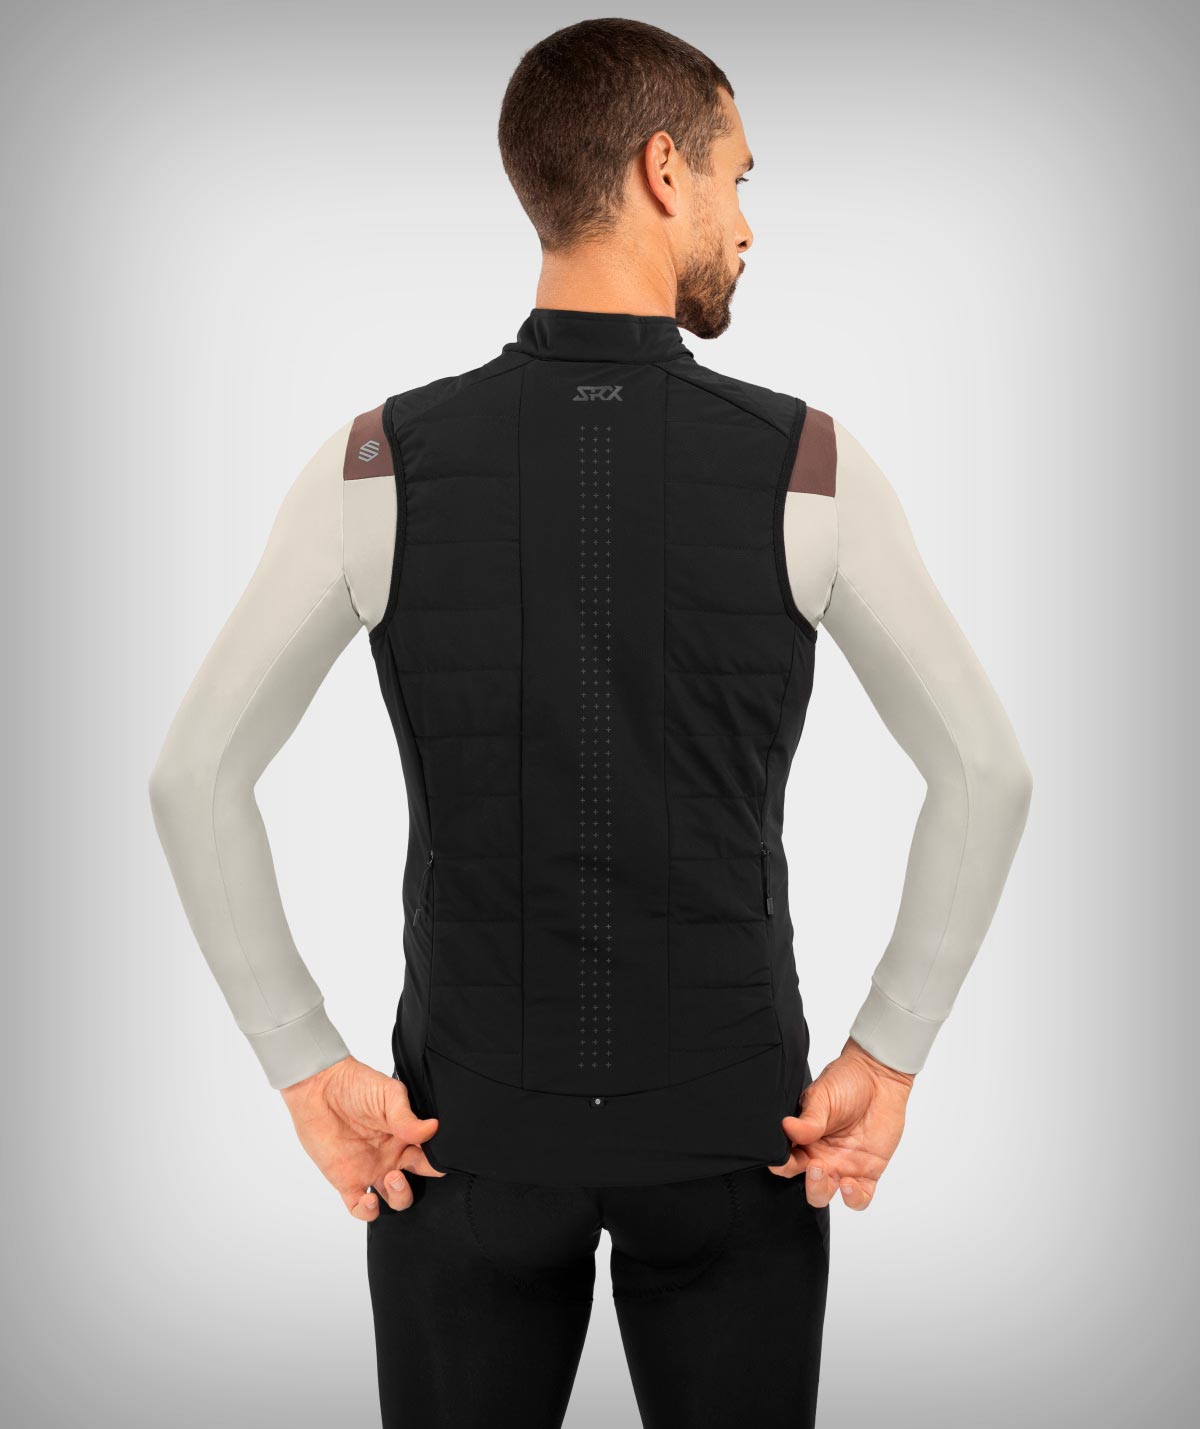 Siroko SRX Ultra Warm, un chaleco térmico ideal para los días en los que sobra la chaqueta